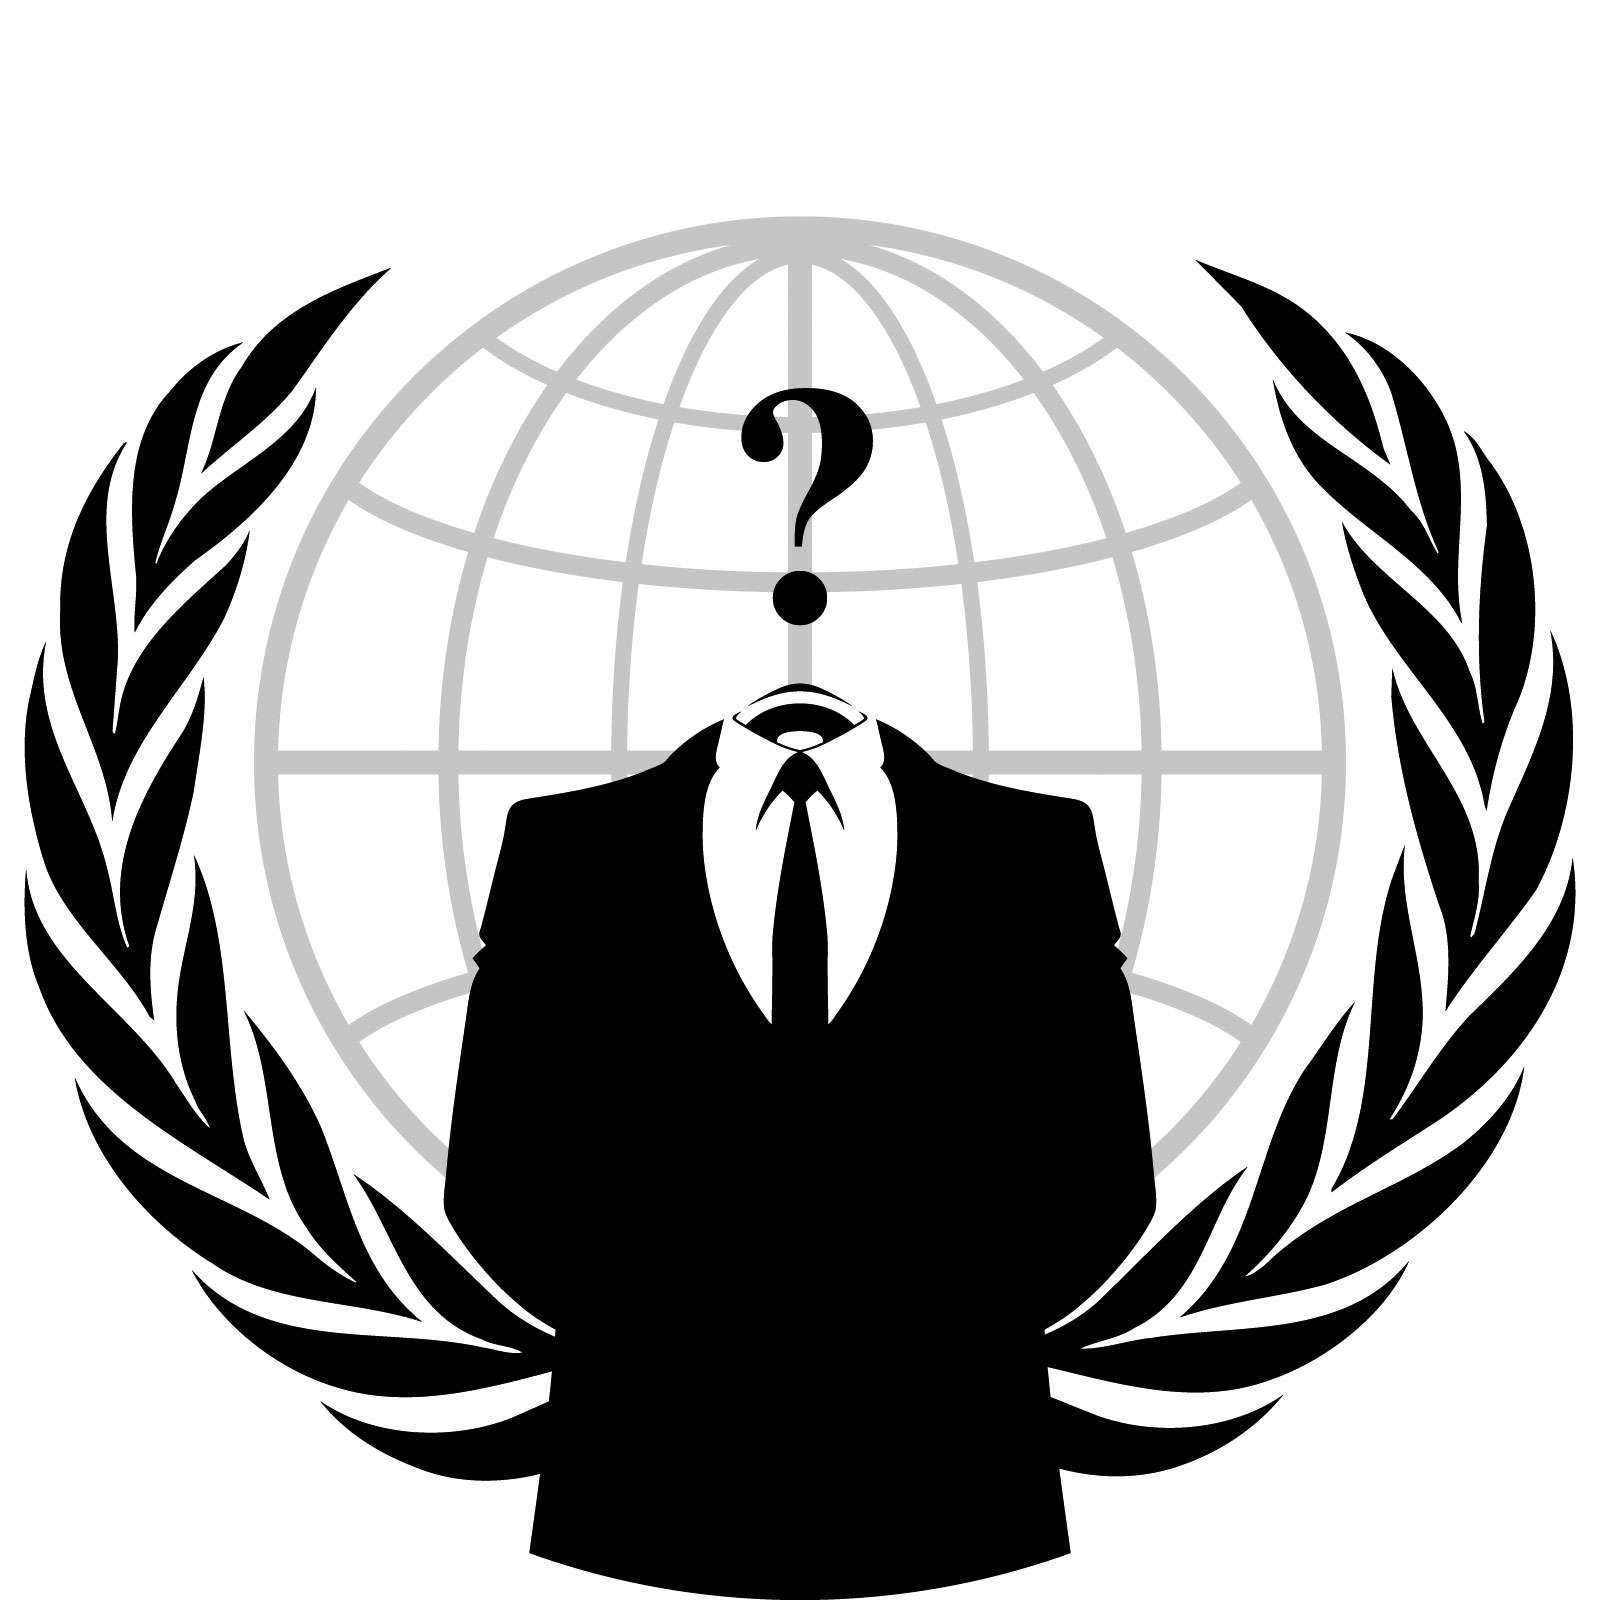 Comment faire pour demeurer anonyme sur internet ?